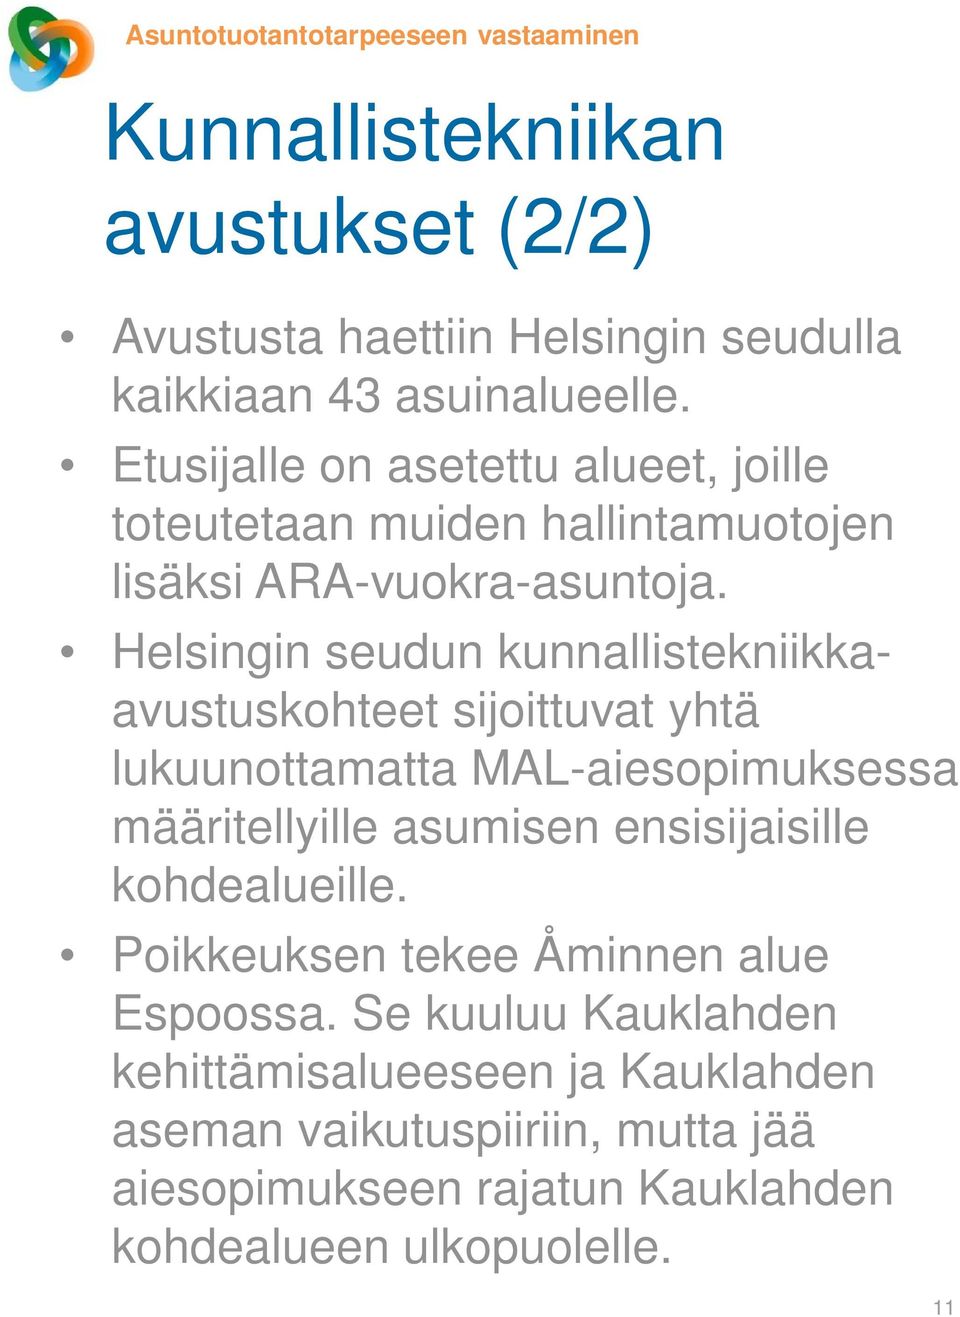 Helsingin seudun kunnallistekniikkaavustuskohteet sijoittuvat yhtä lukuunottamatta MAL-aiesopimuksessa määritellyille asumisen ensisijaisille